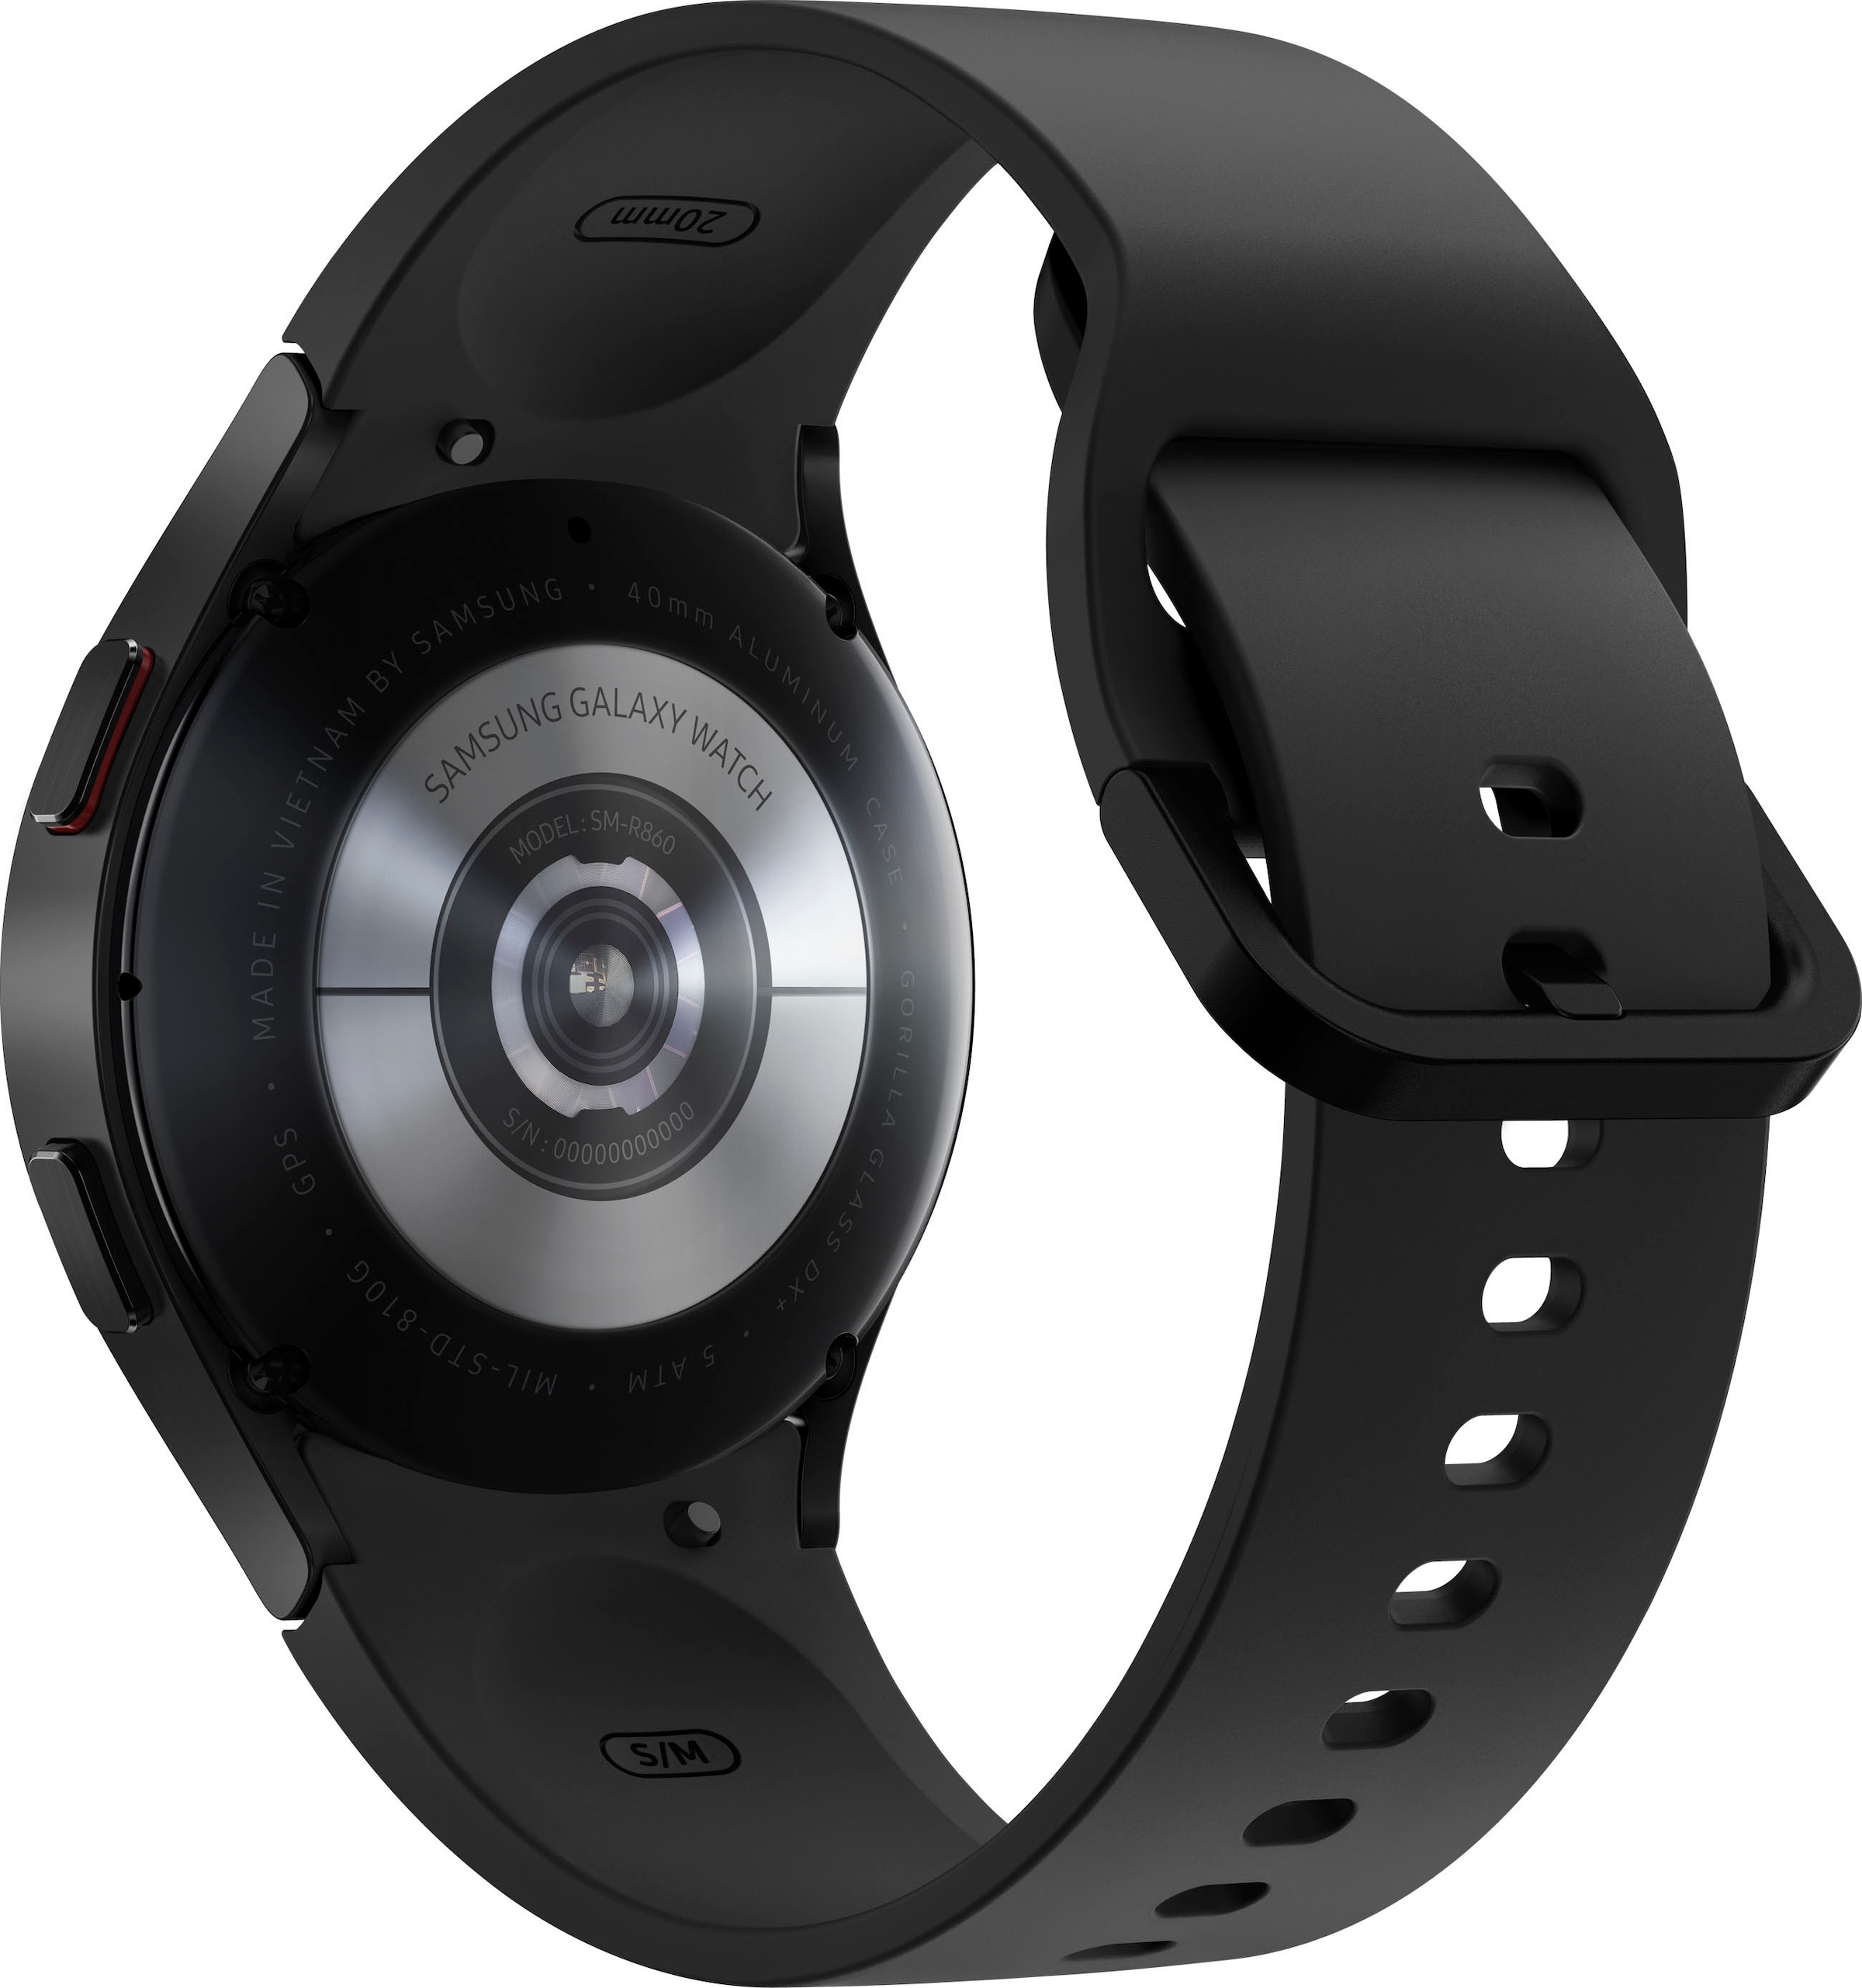 »Galaxy Watch | (Wear Smartwatch Jahre ➥ Samsung BT«, Google) 4-40mm OS UNIVERSAL by 3 XXL Garantie